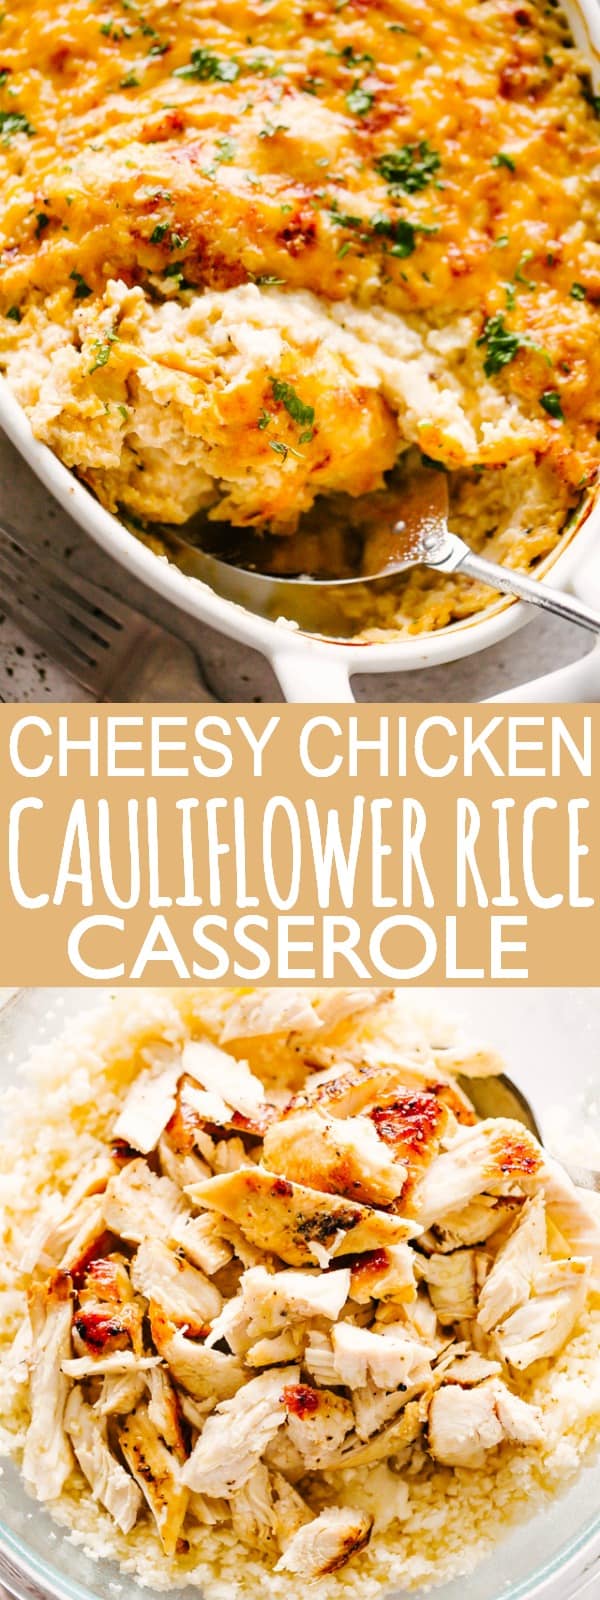 Chicken Cauliflower Rice Casserole | Diethood